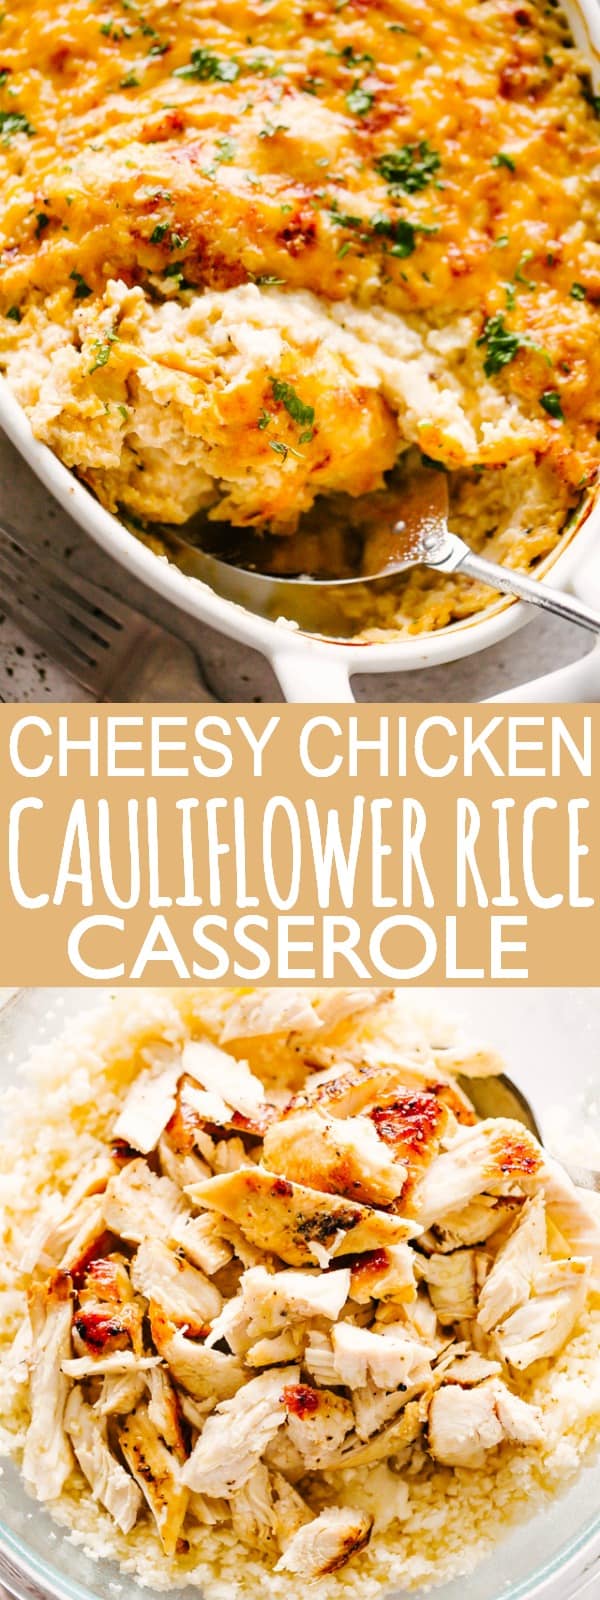 Chicken Cauliflower Rice Casserole | Diethood